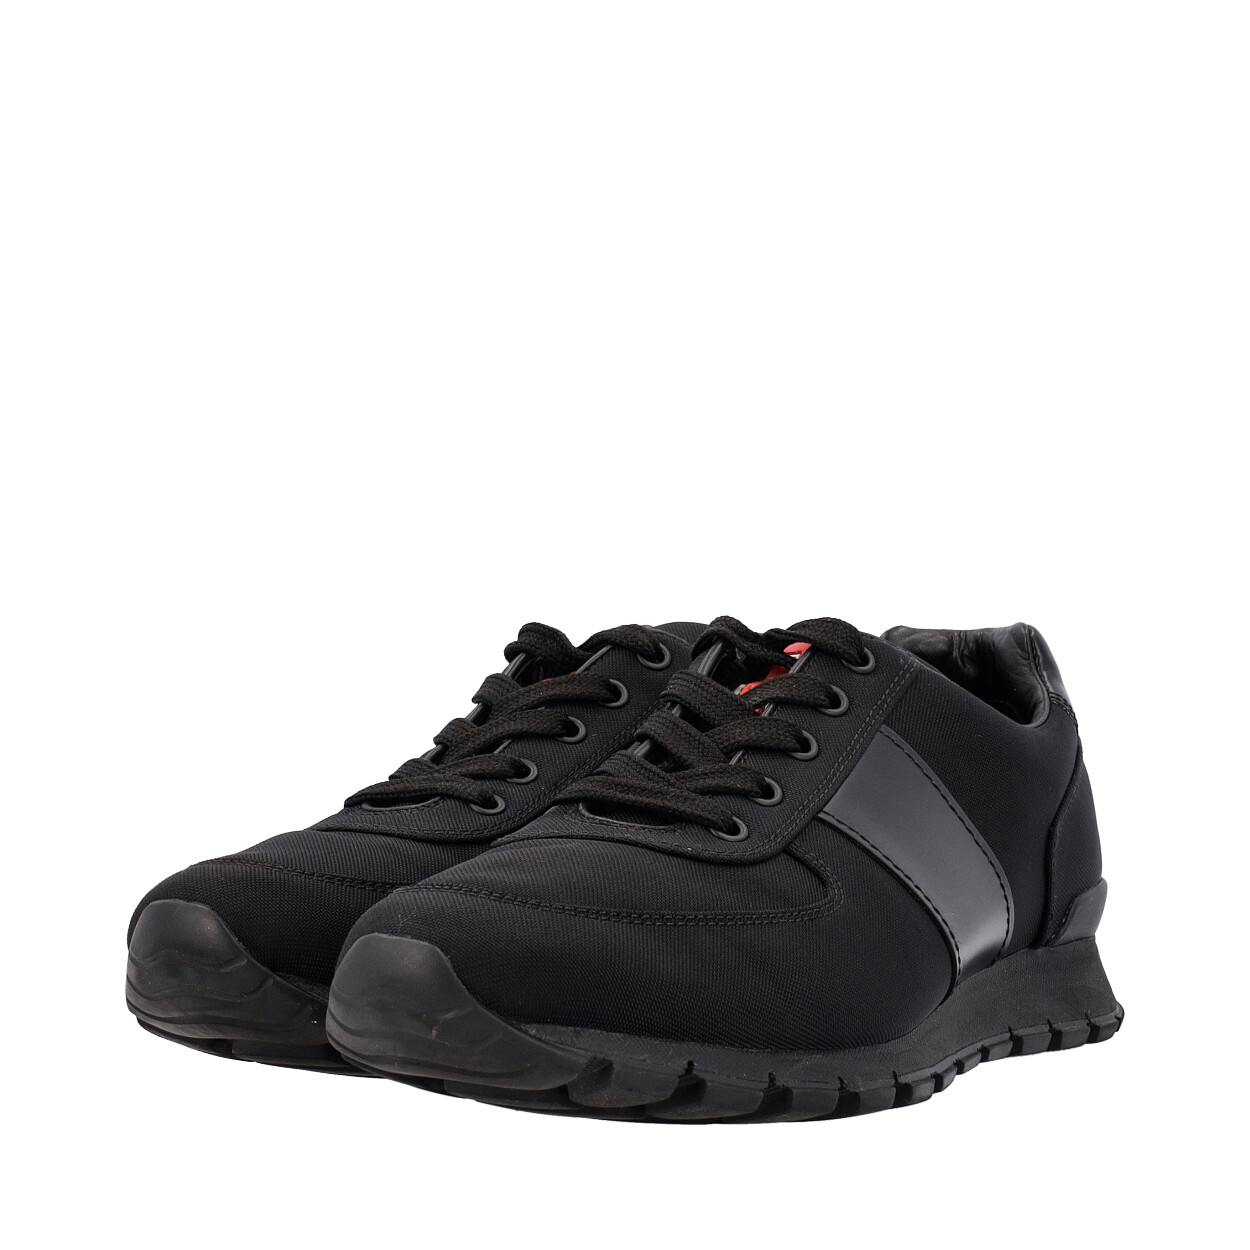 PRADA Tessuto/Leather Sneakers Black | Luxity